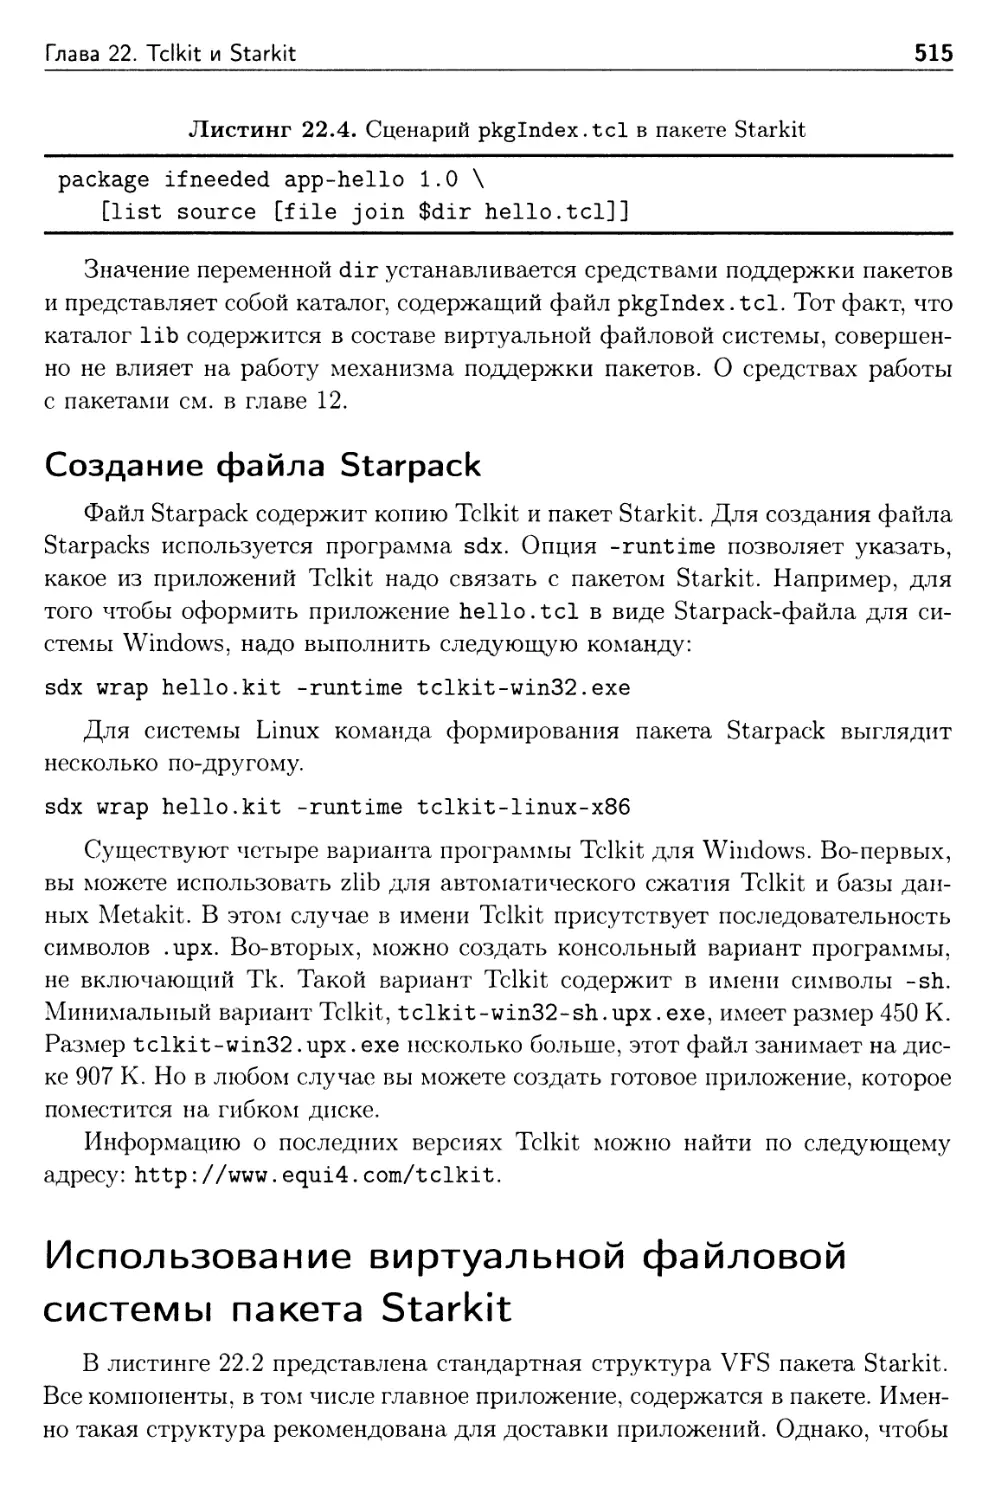 Создание файла Starpack
Использование виртуальной файловой системы пакета Starkit